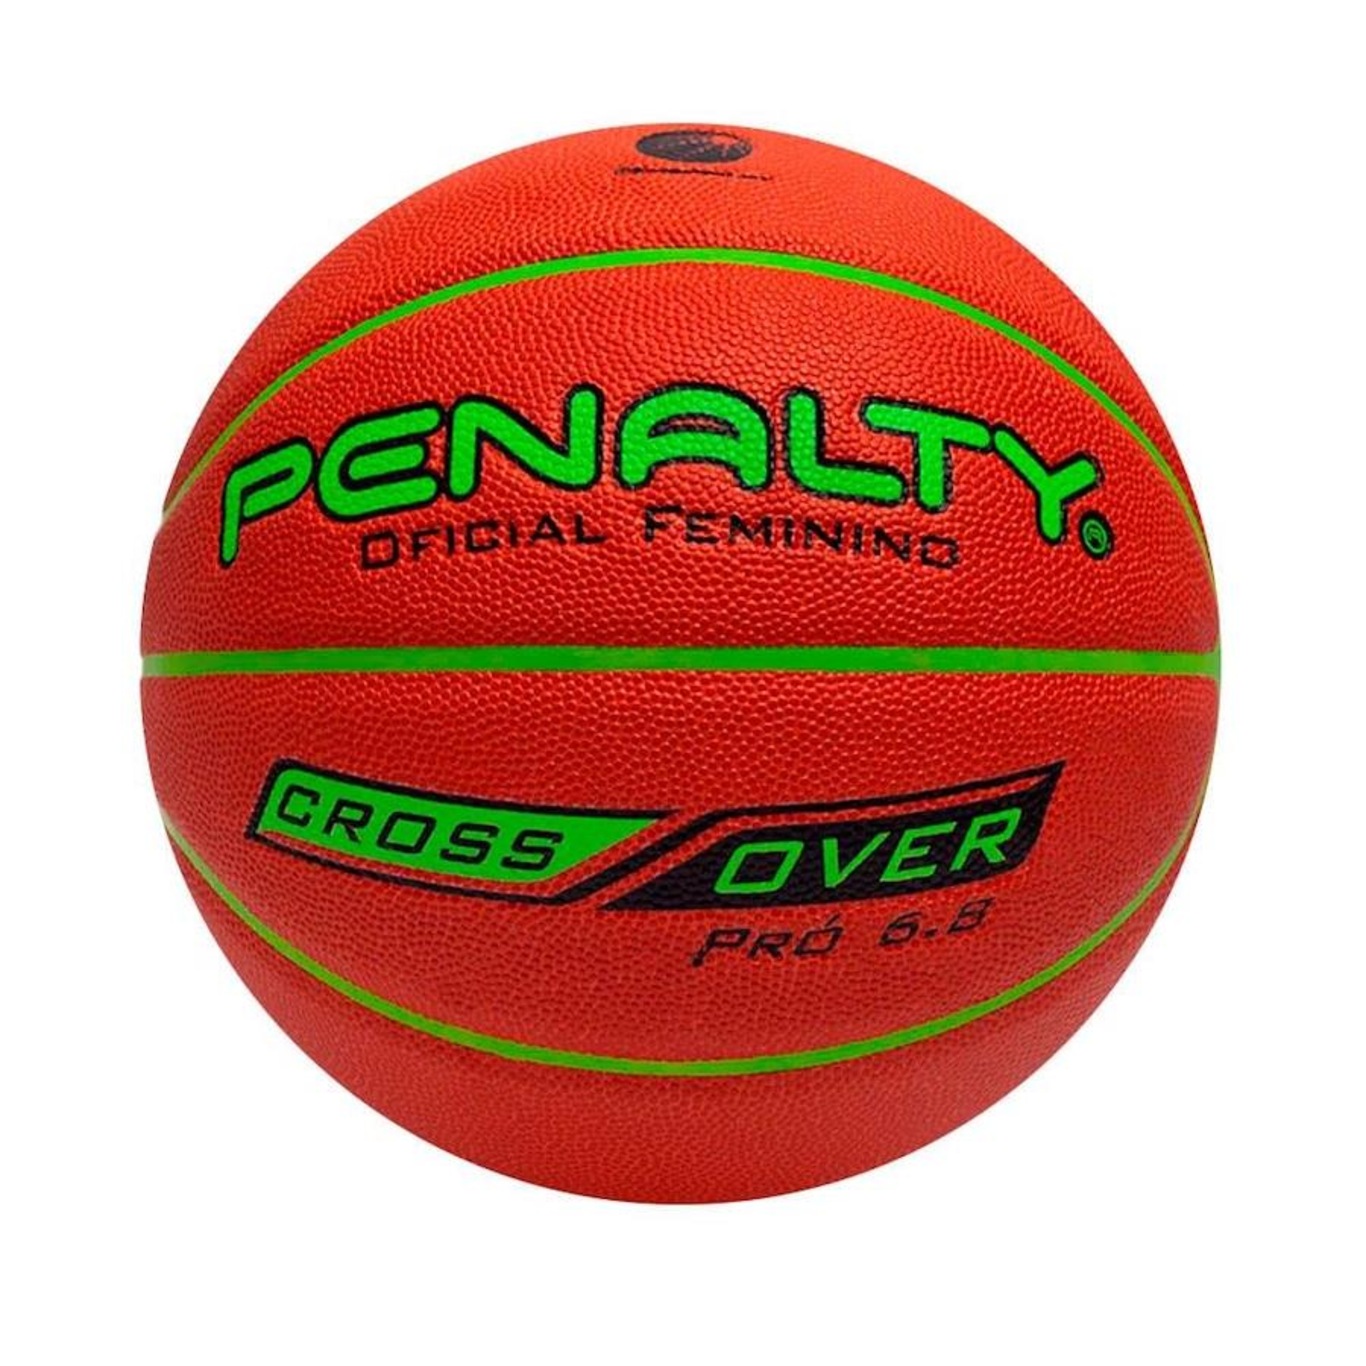 Kit Bola Basquete Penalty Crossover X 7.8 + Bomba de Ar - Shop Coopera